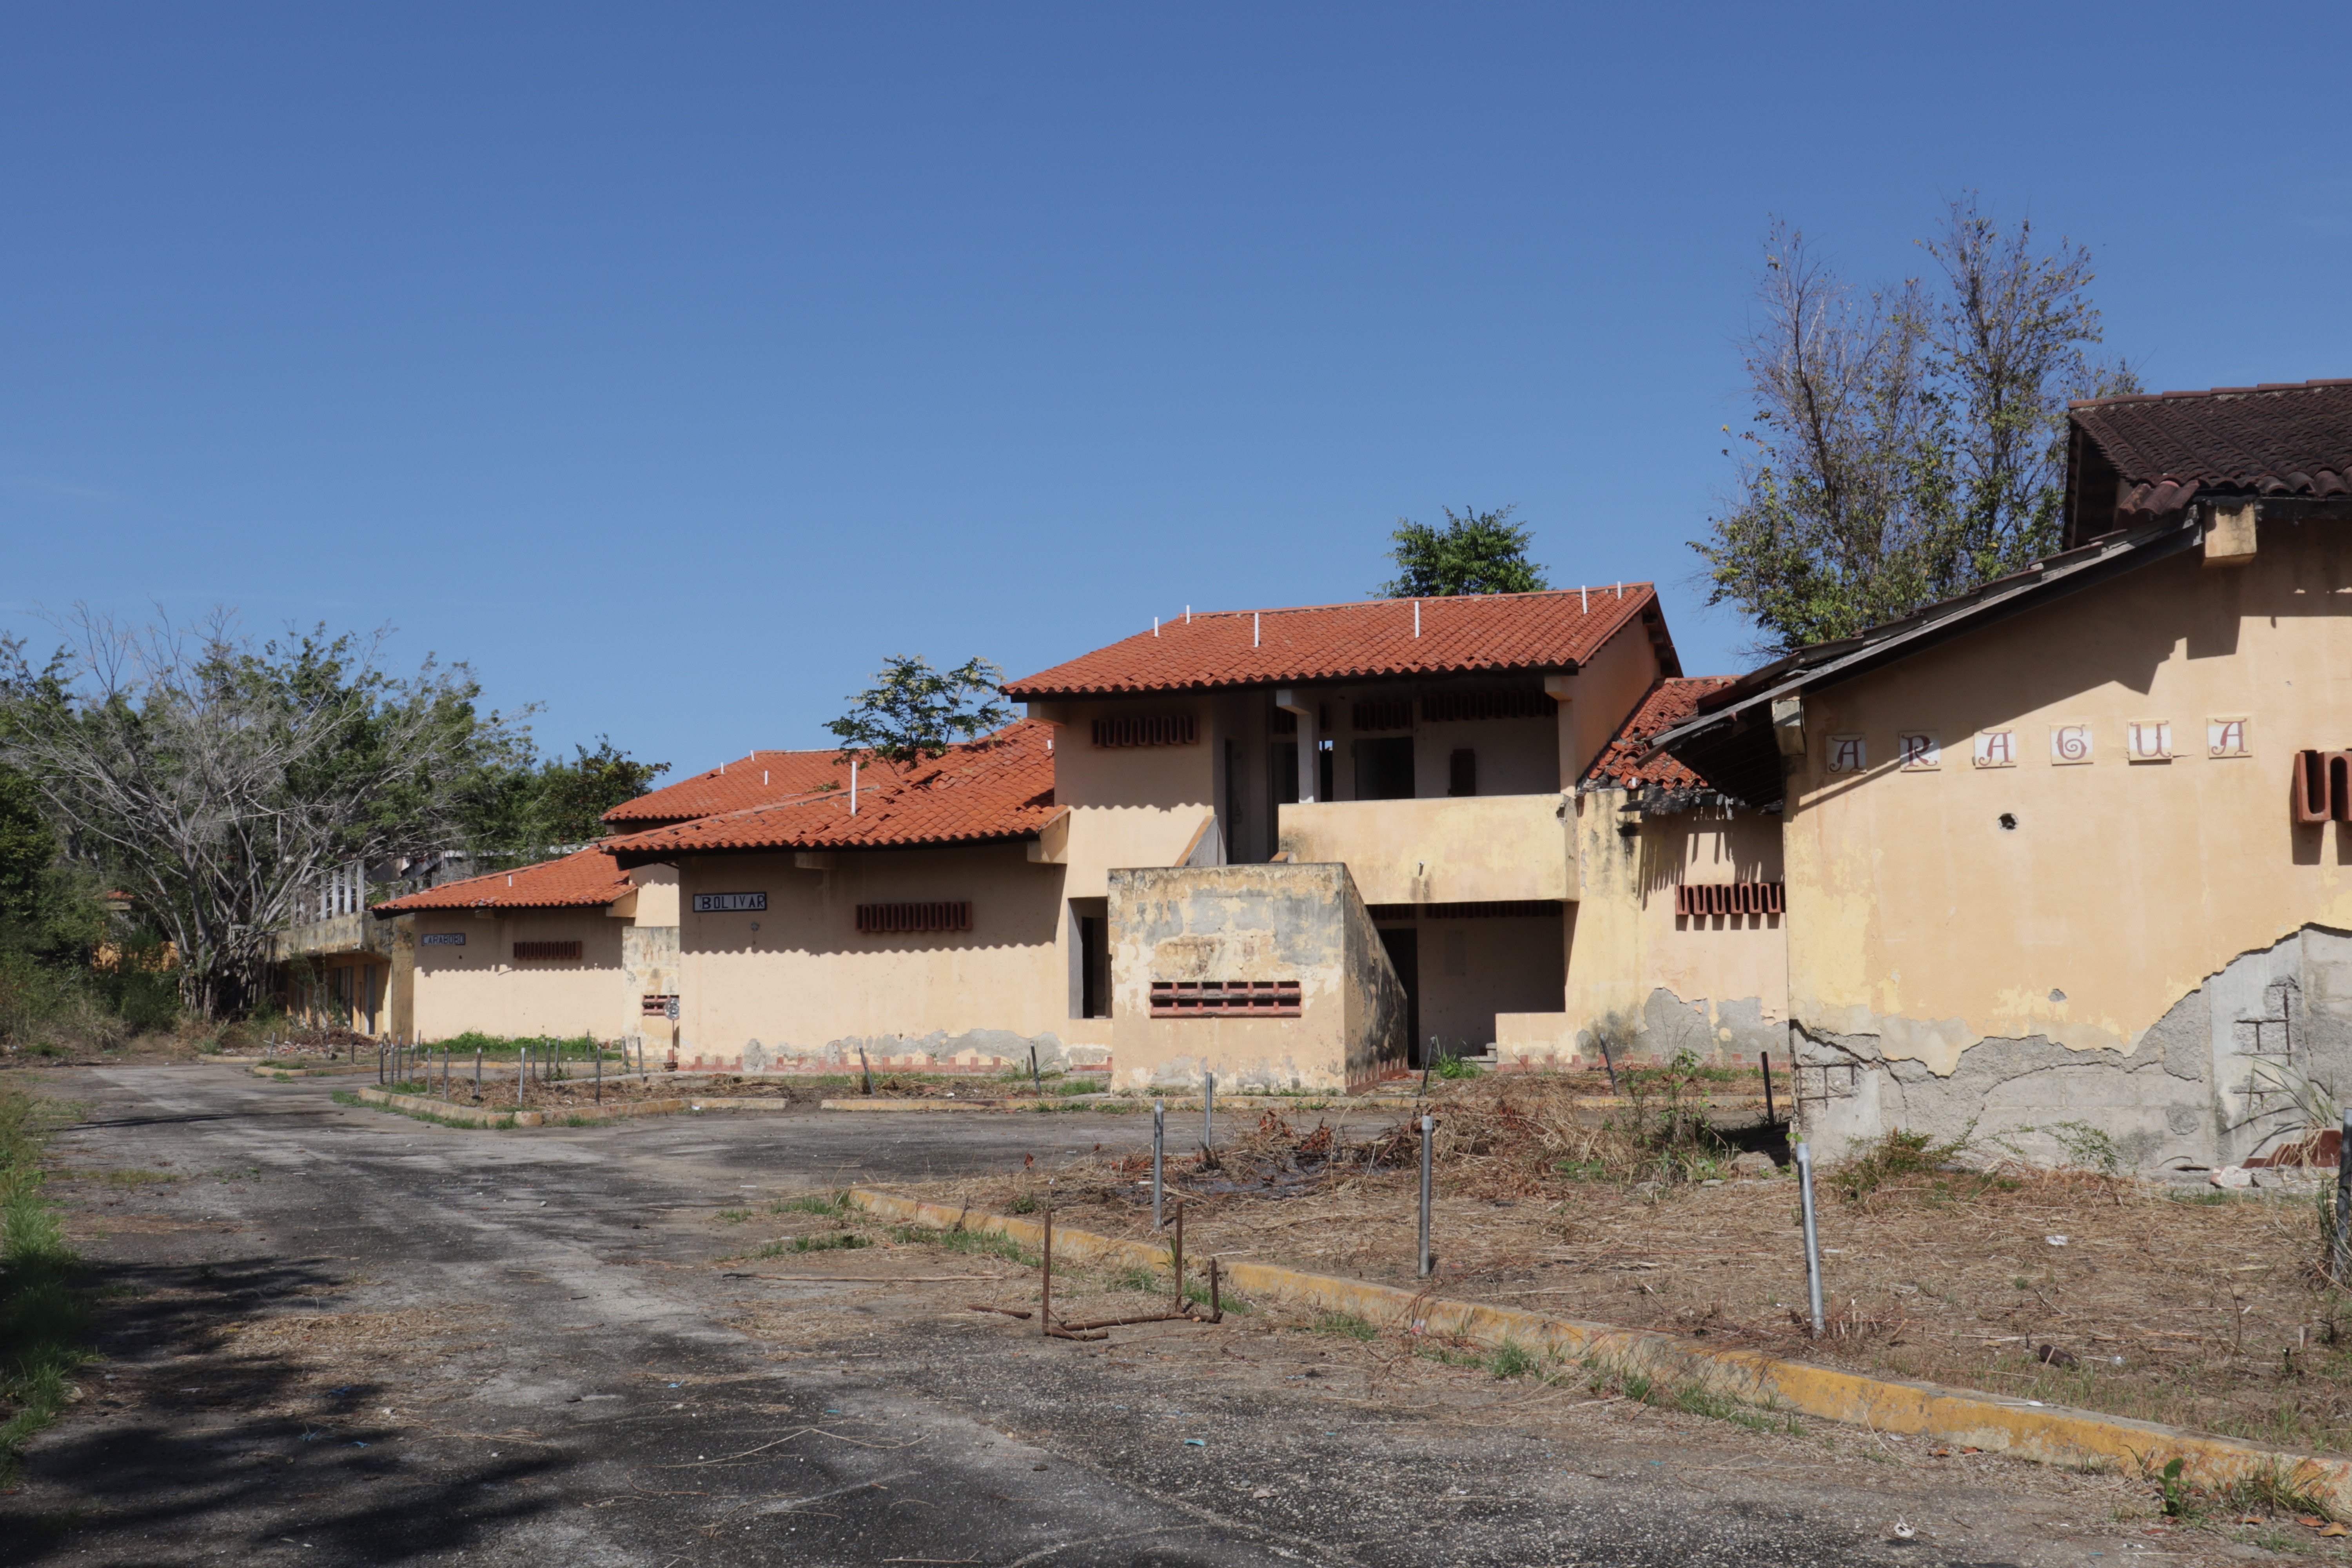 Villa vacacional abandonada en Río Chico.